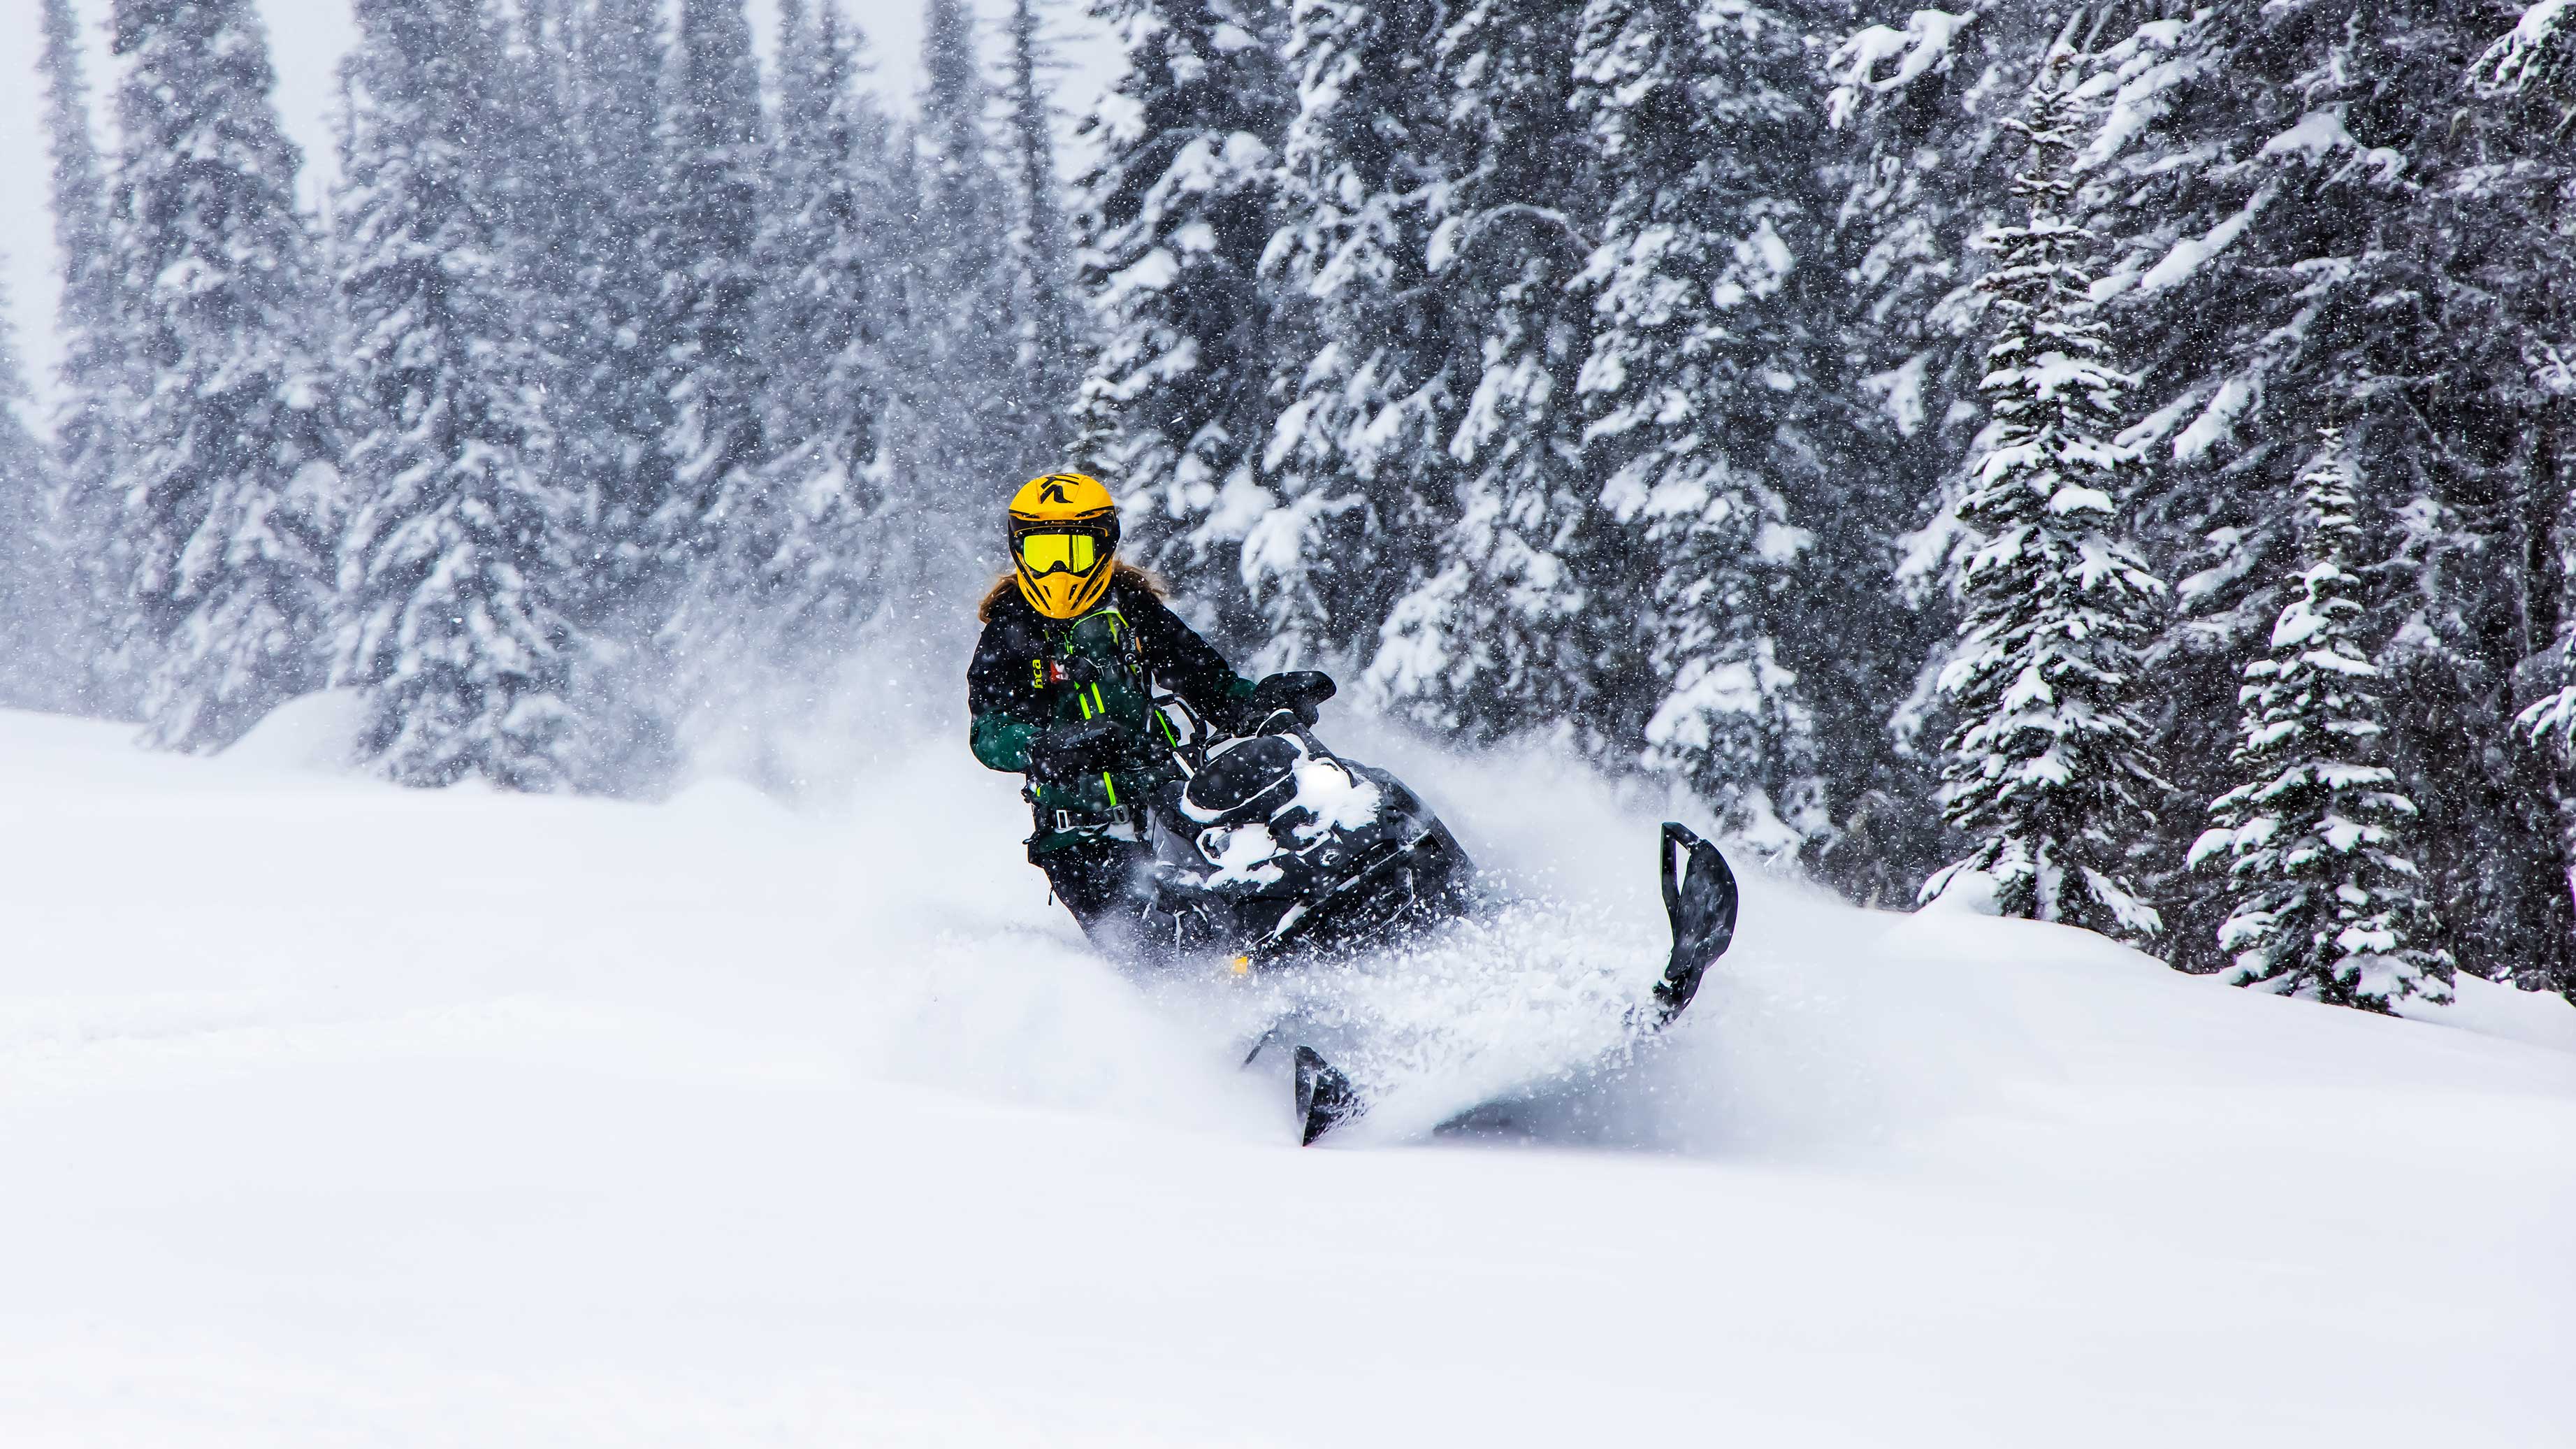 Stefanie Dean riding a Ski-Doo Summit Edge in Deep snow